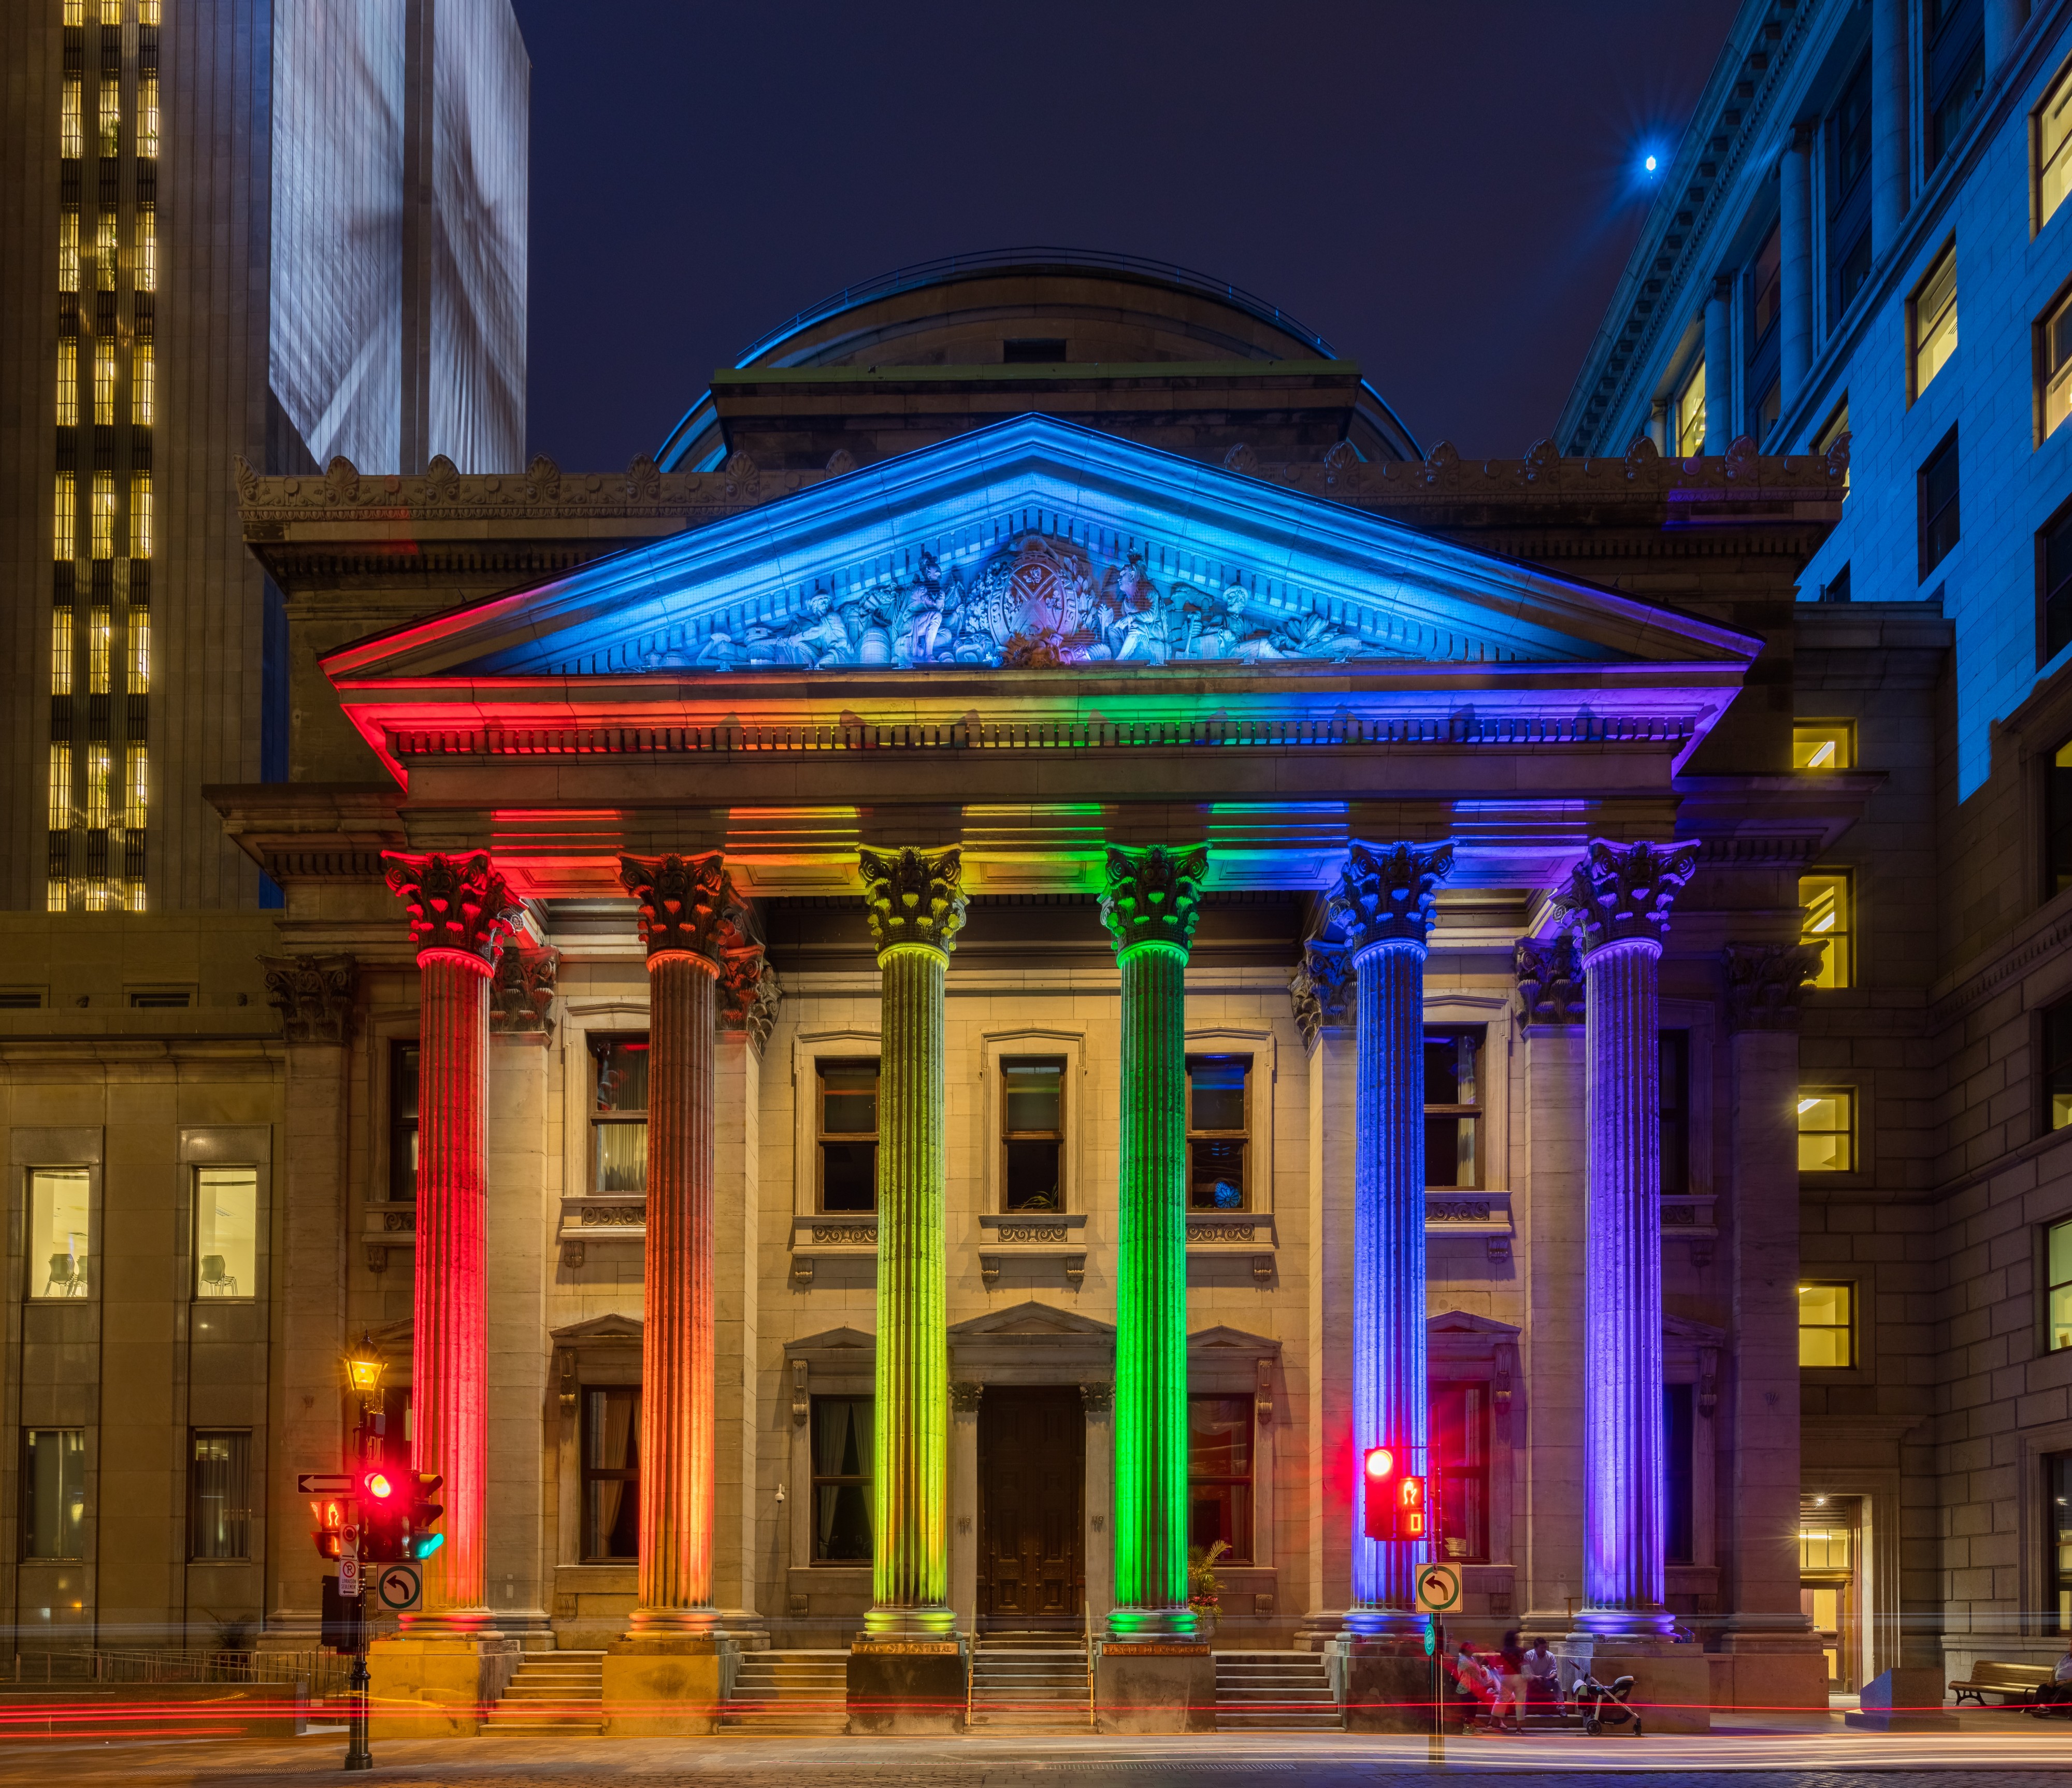 Sede del Banco de Montreal, Montreal, Canadá, 2017-08-11, DD 23-25 HDR